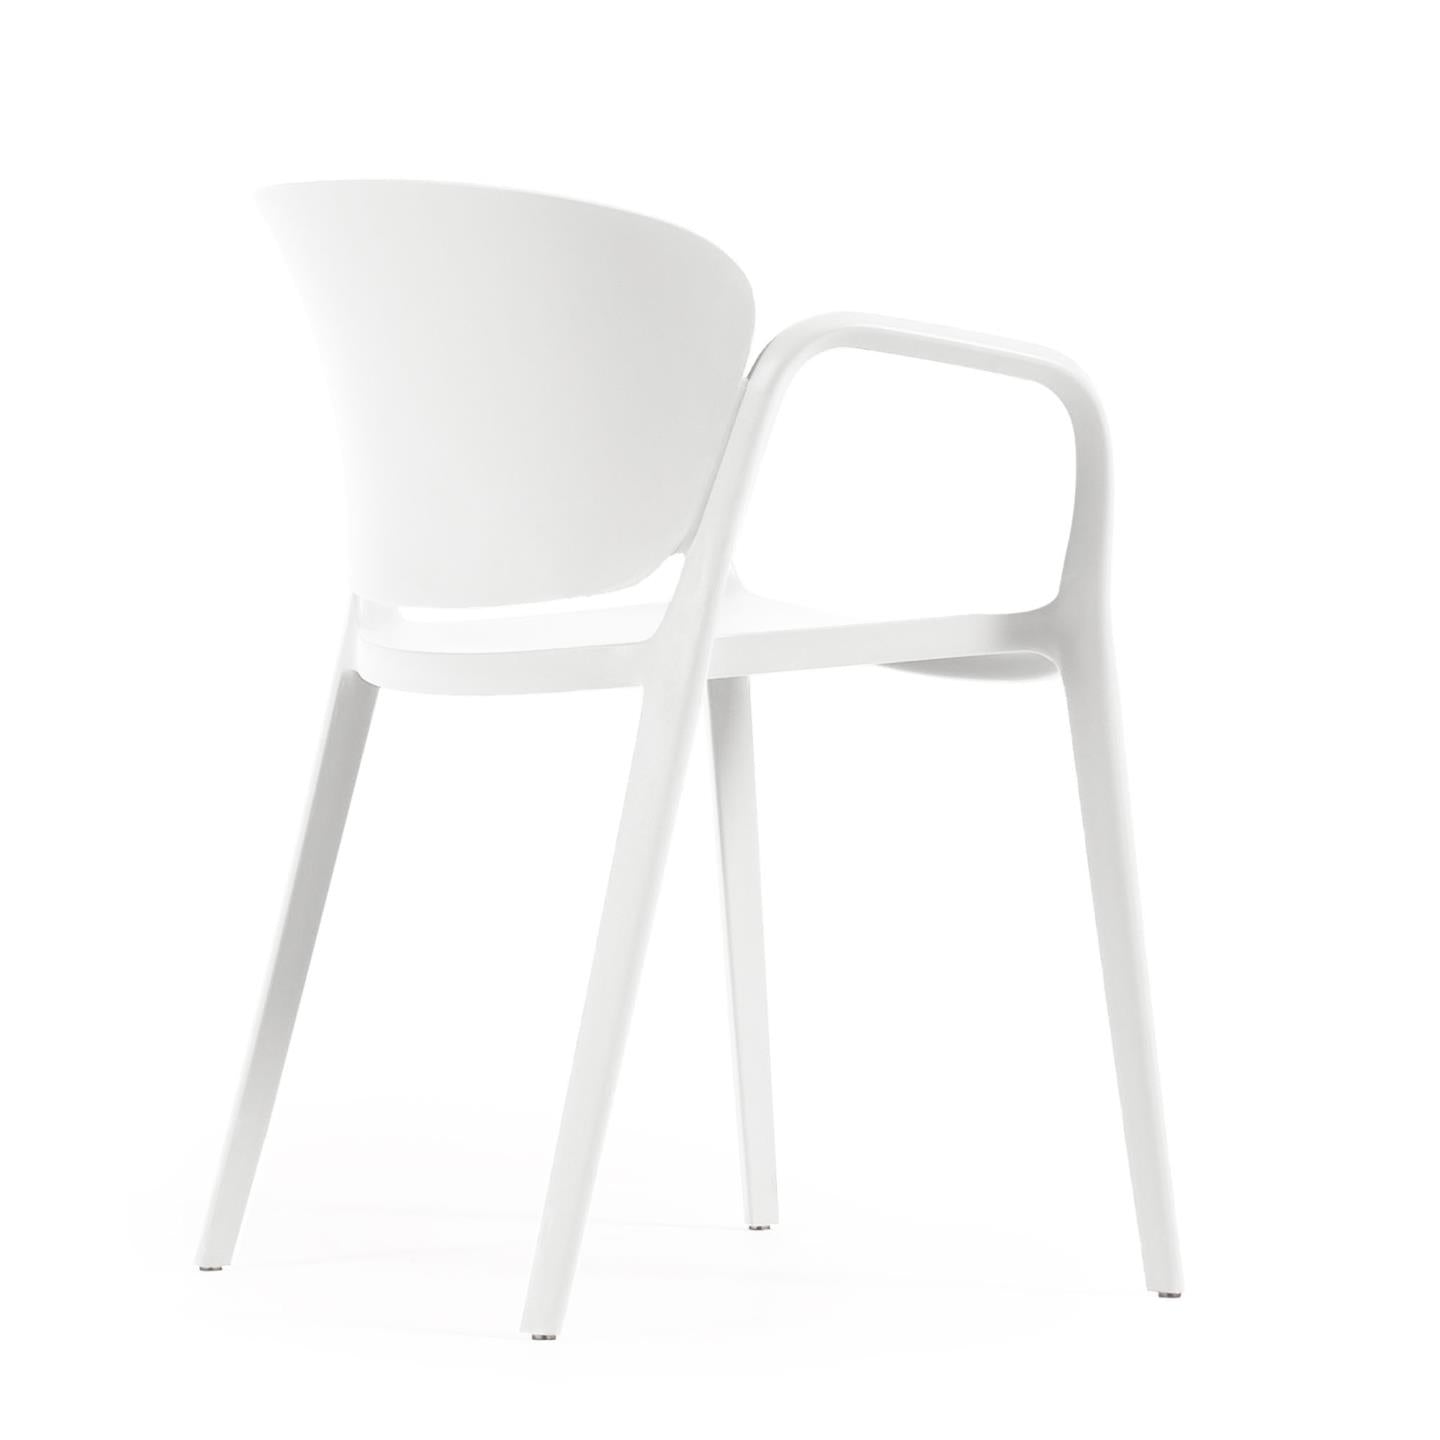 Ania stackable white garden chair